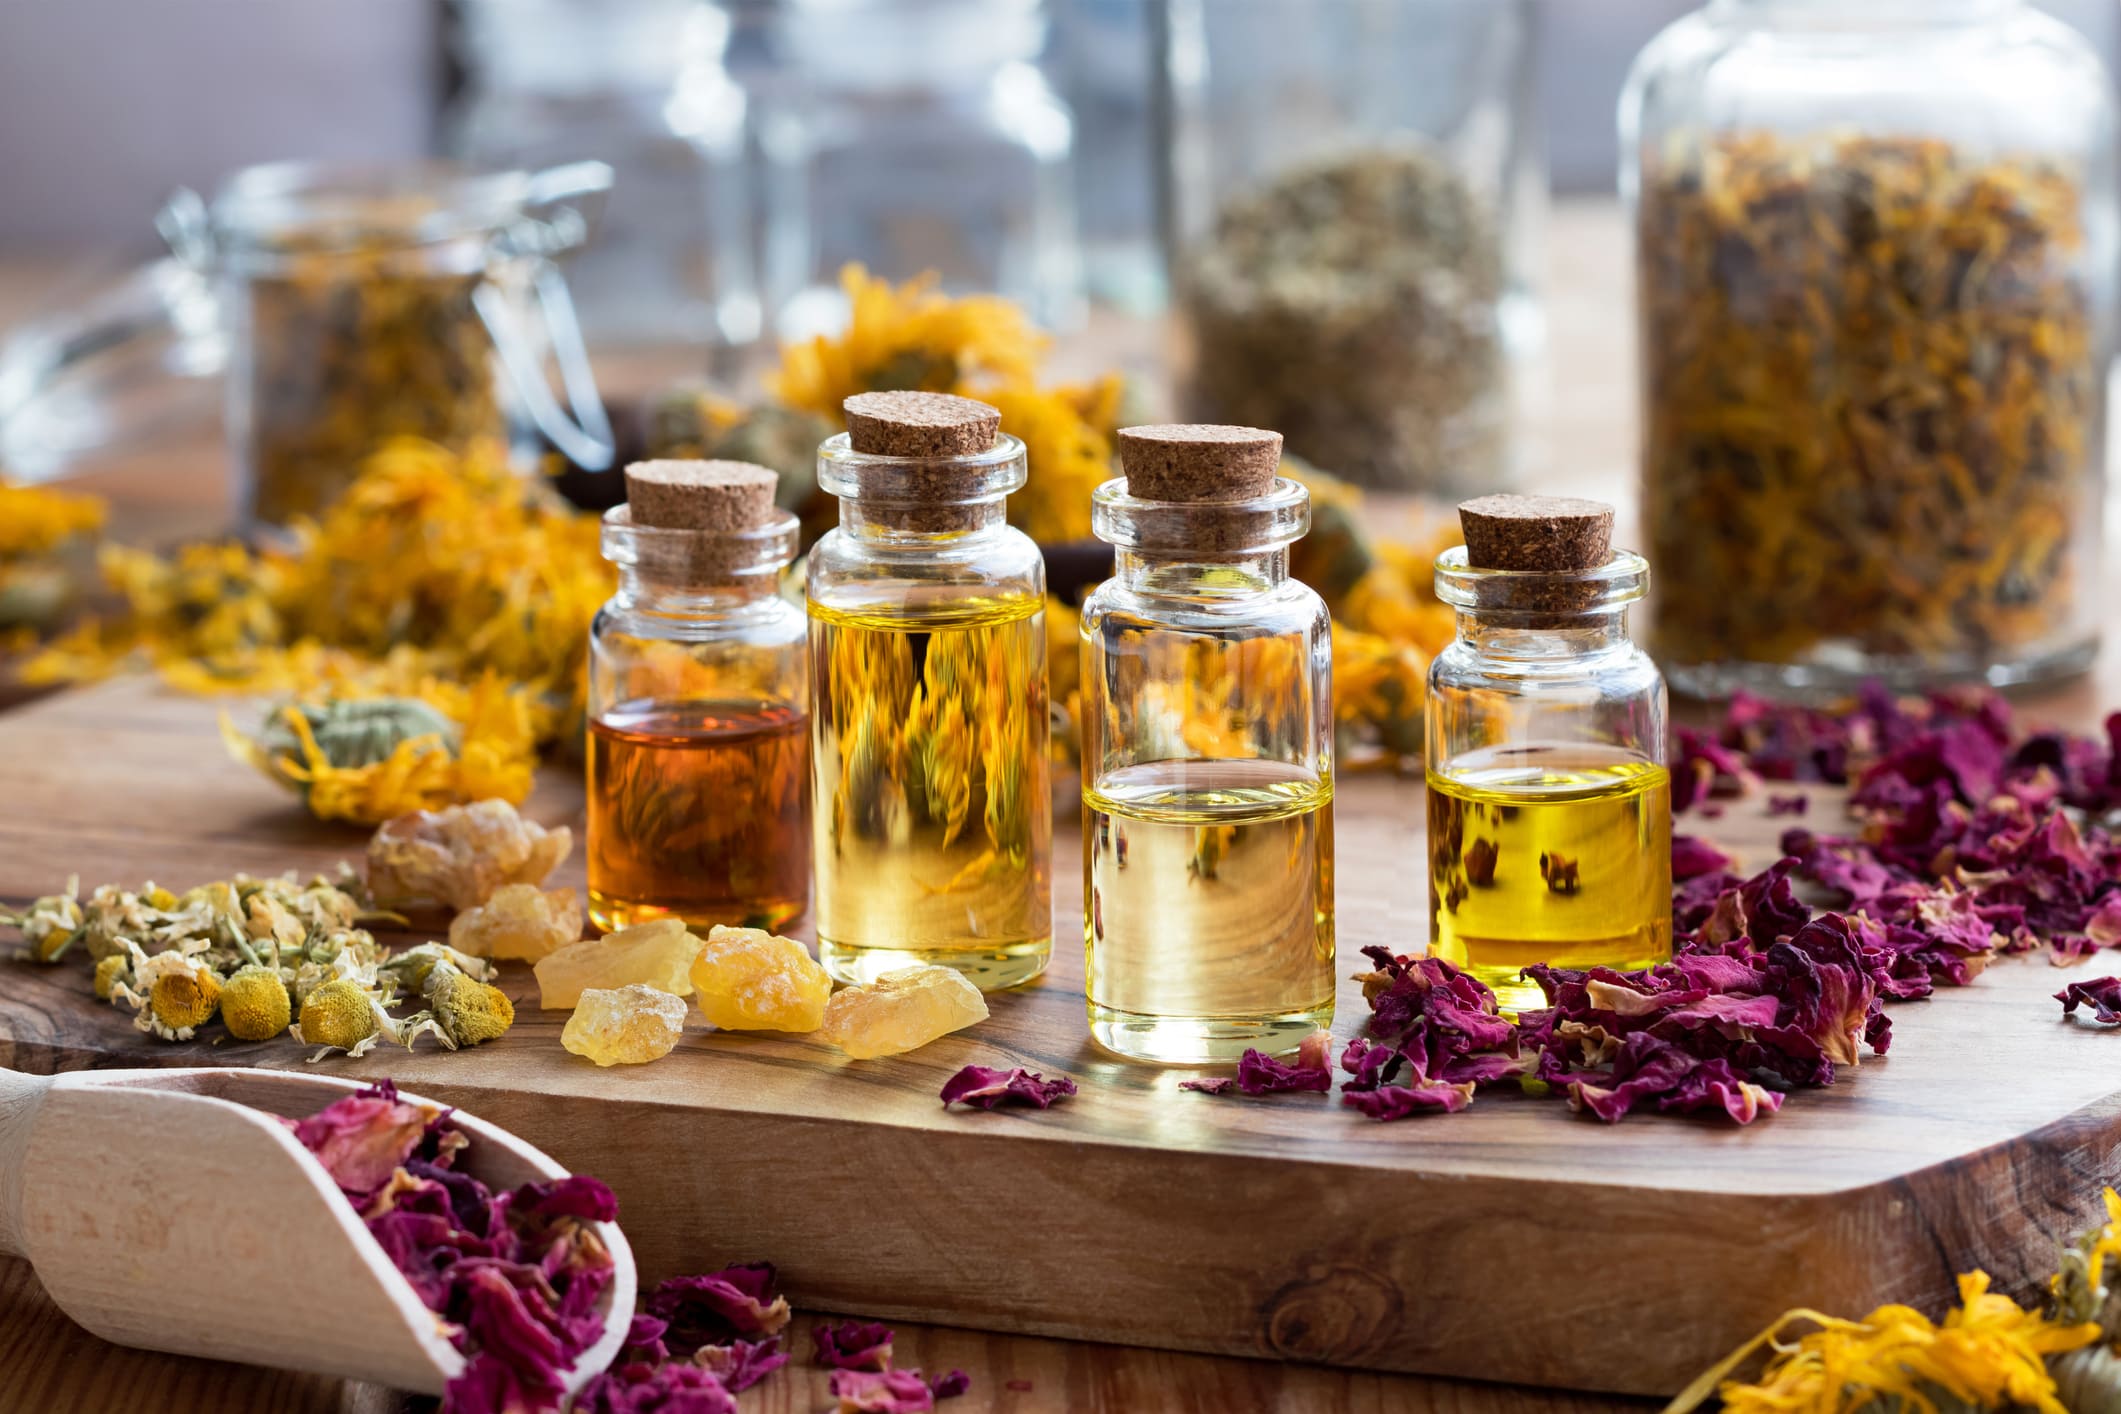 Difusor de aromaterapia con aceites esenciales llenando la habitación